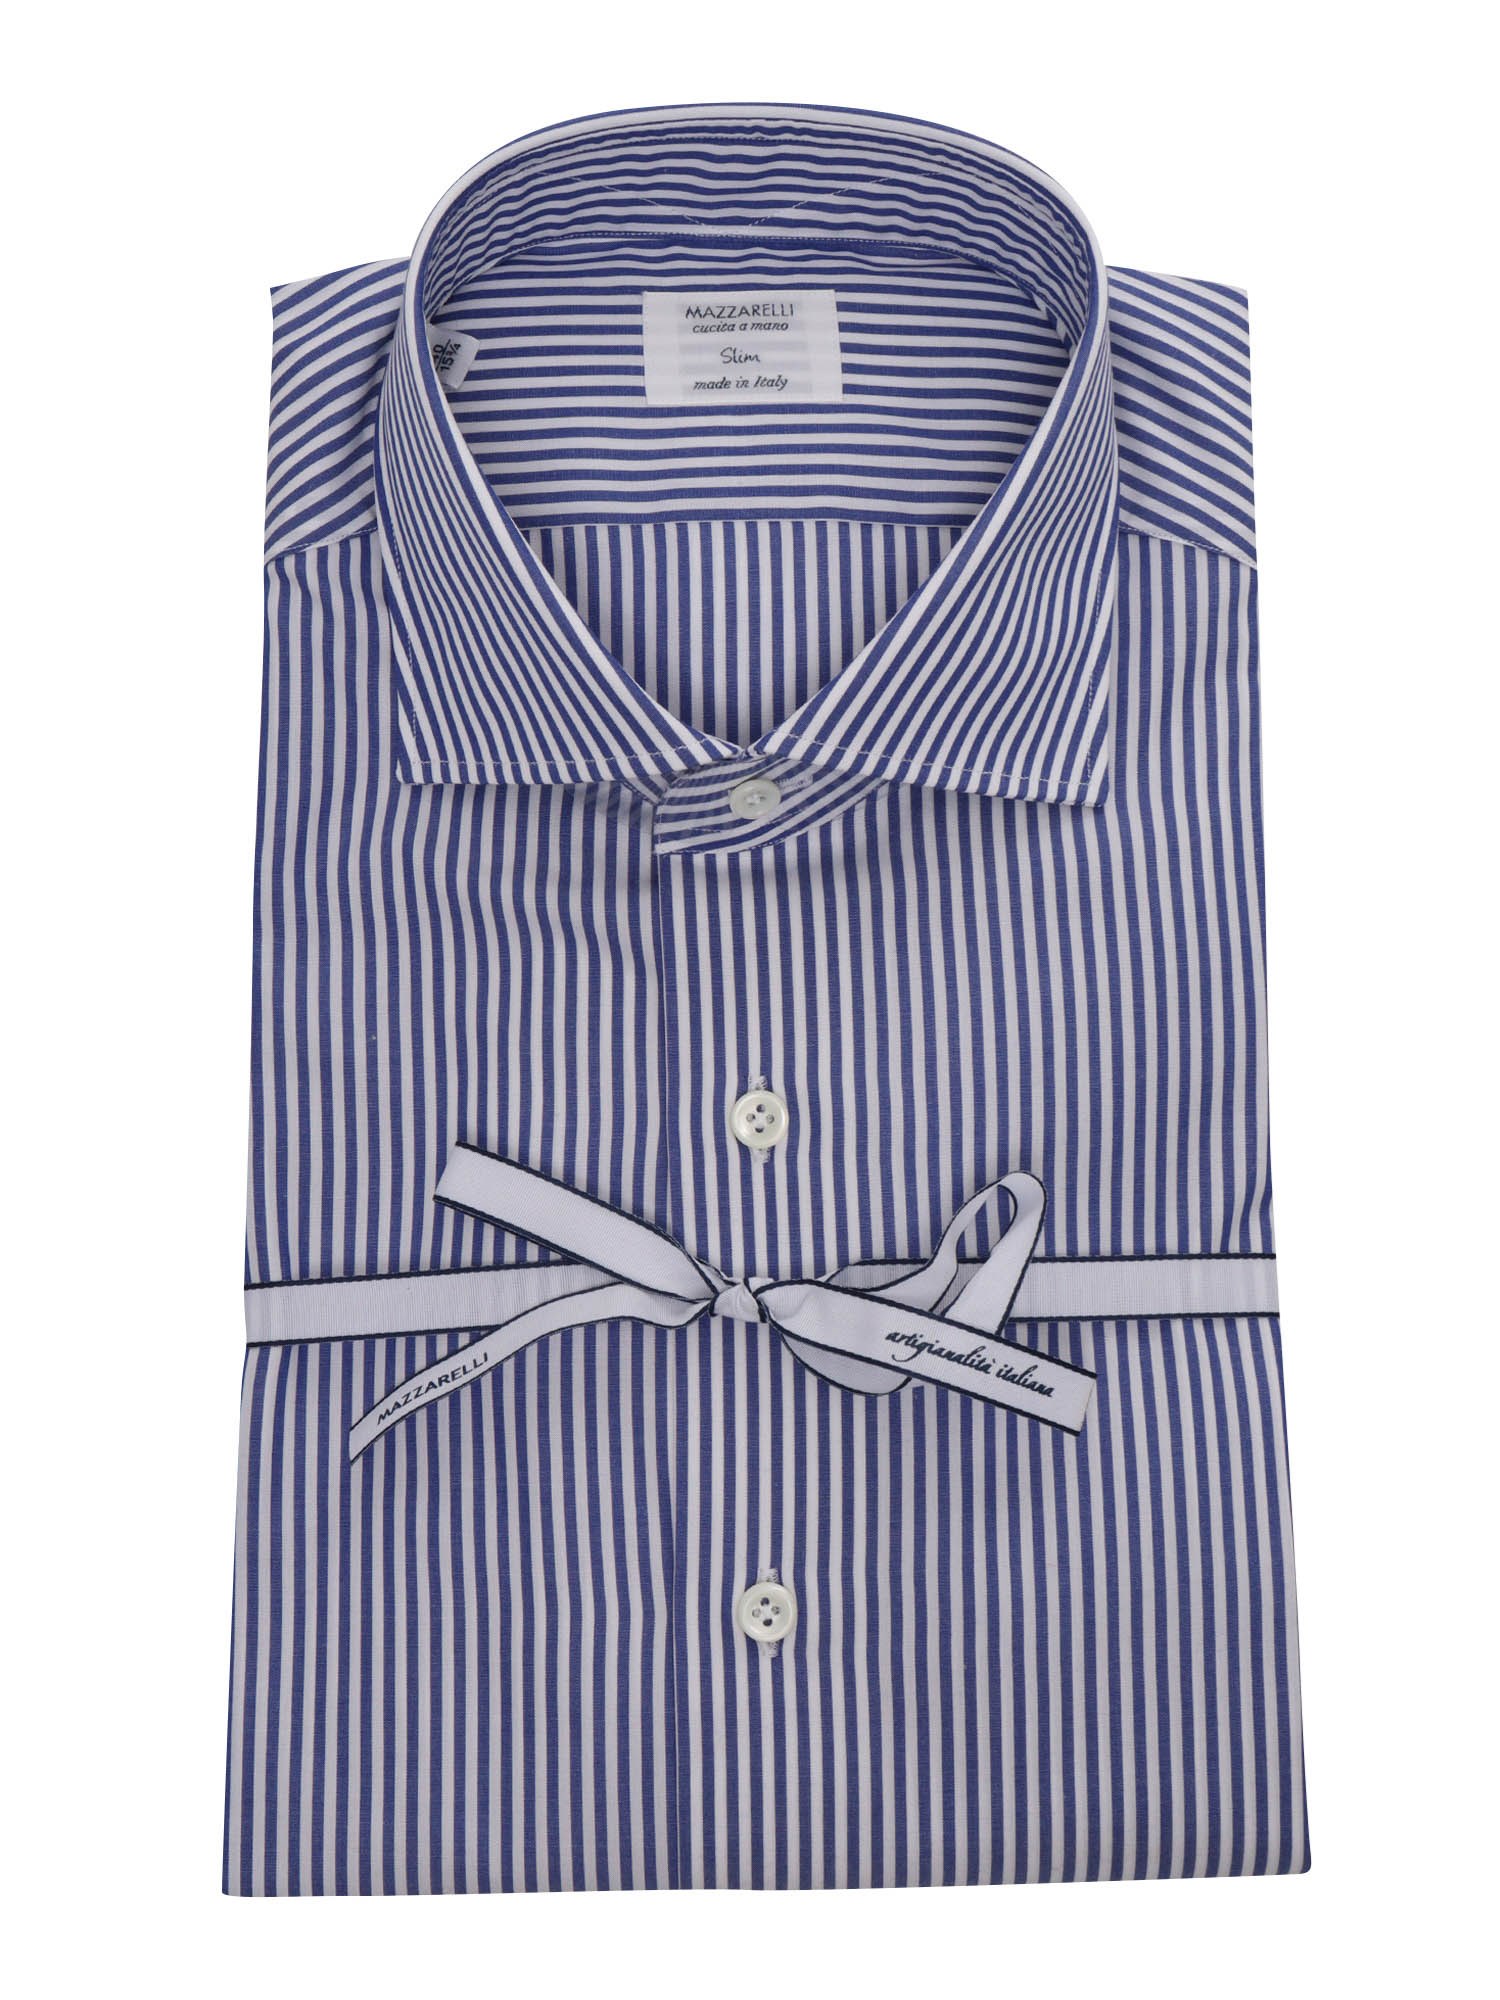 Mazzarelli Blue Striped Shirt In White